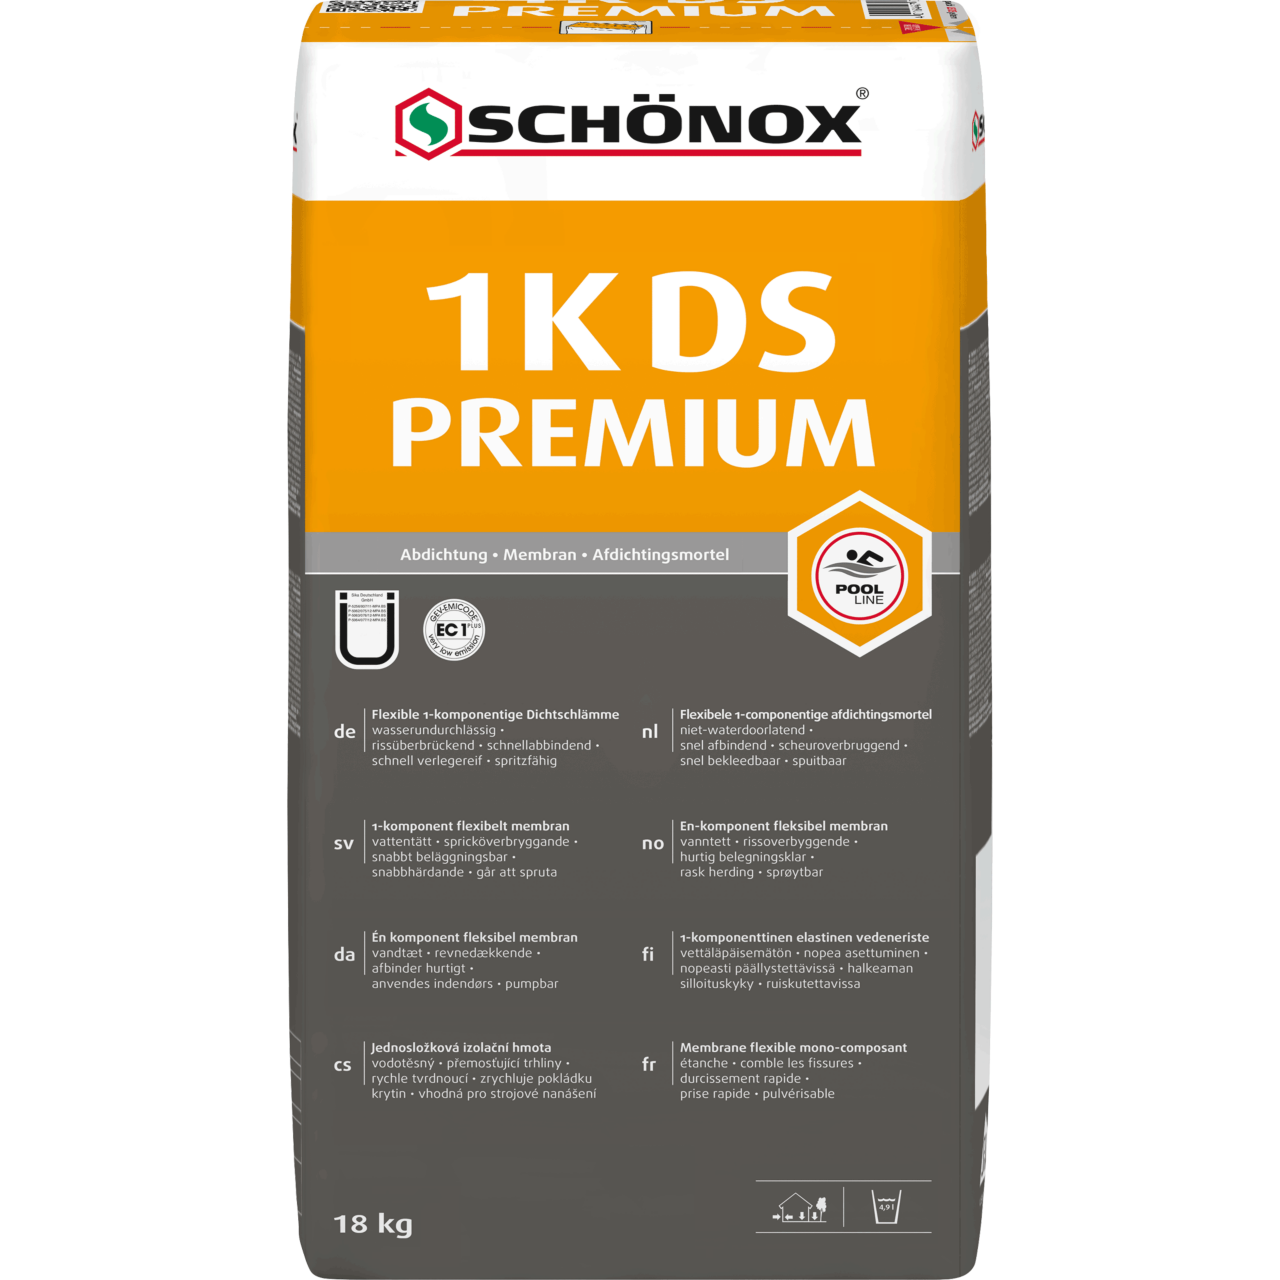 Schönox 1K DS Premium